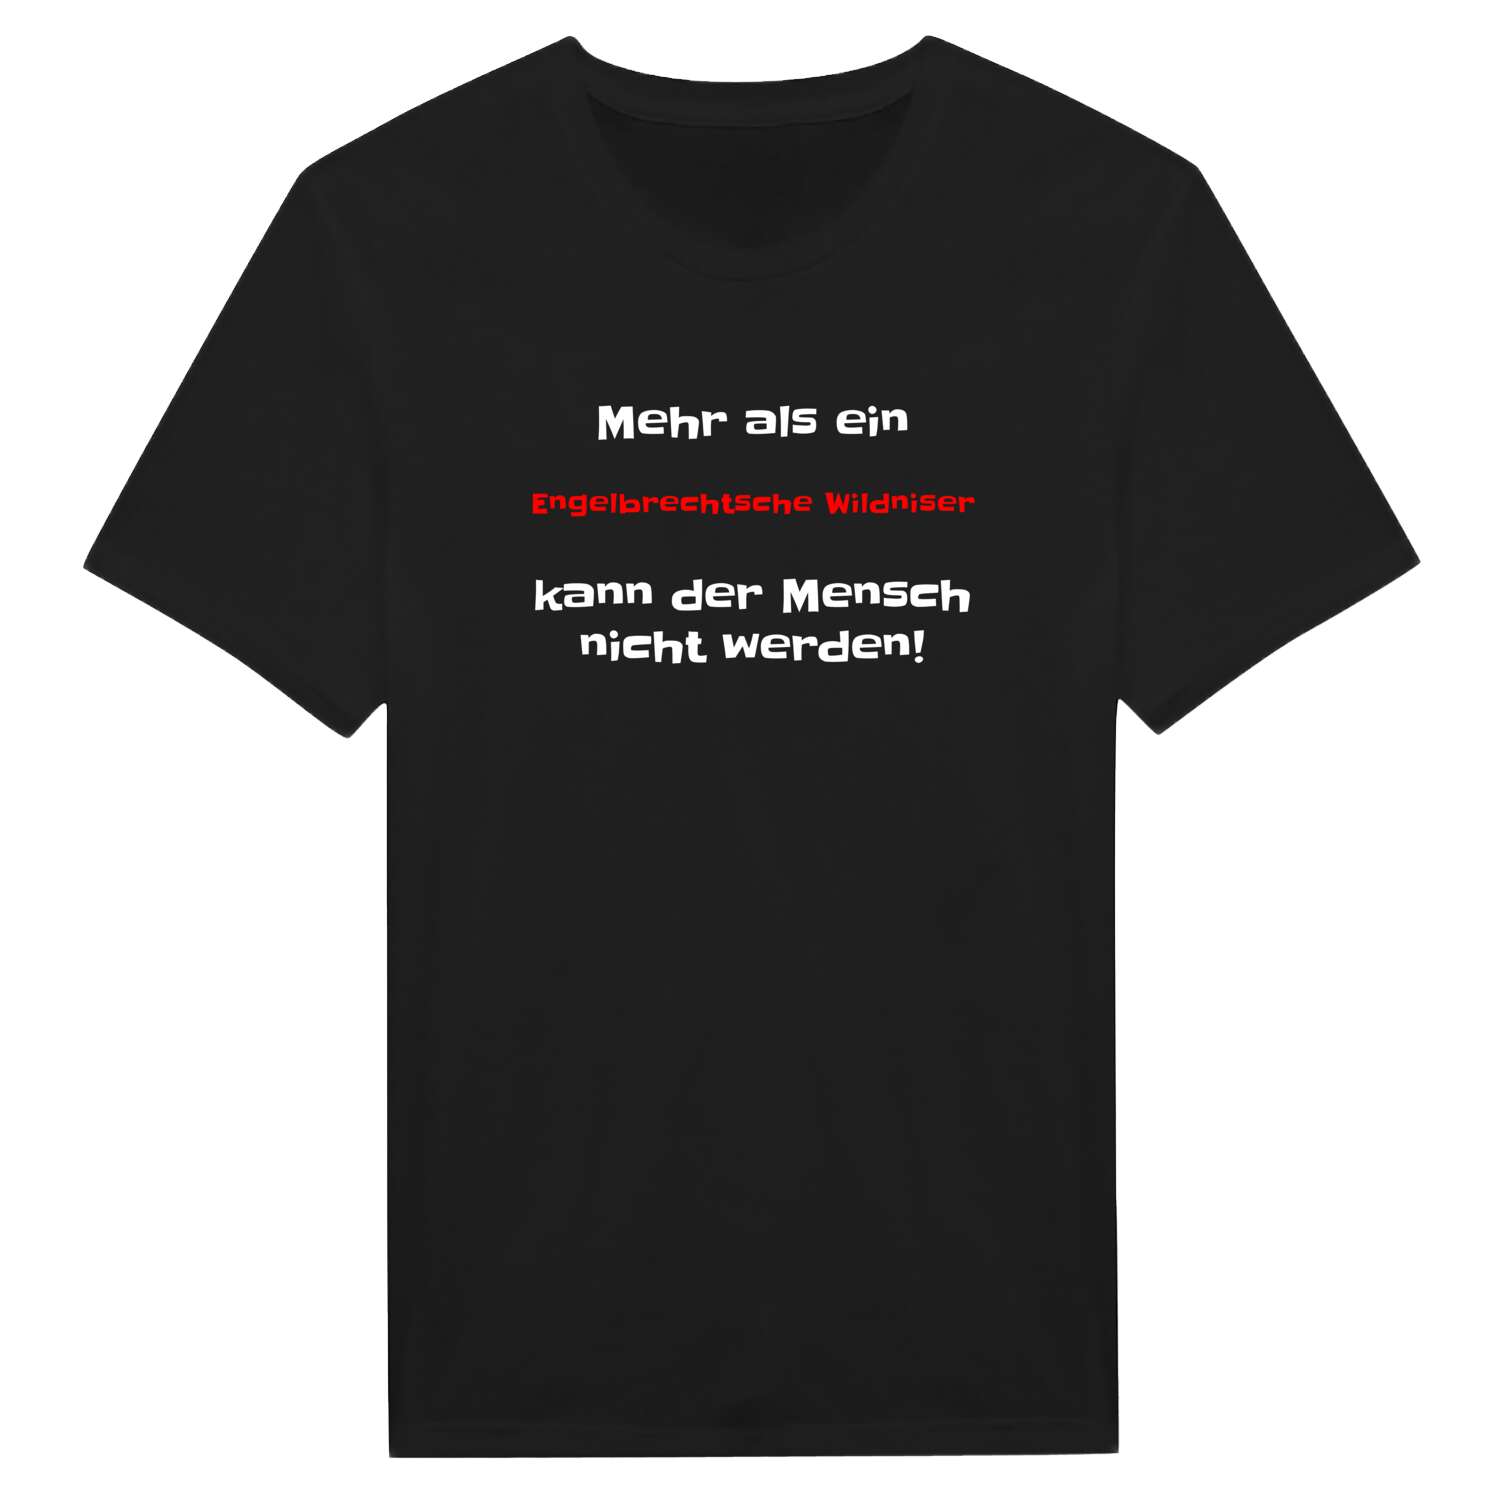 Engelbrechtsche Wildnis T-Shirt »Mehr als ein«